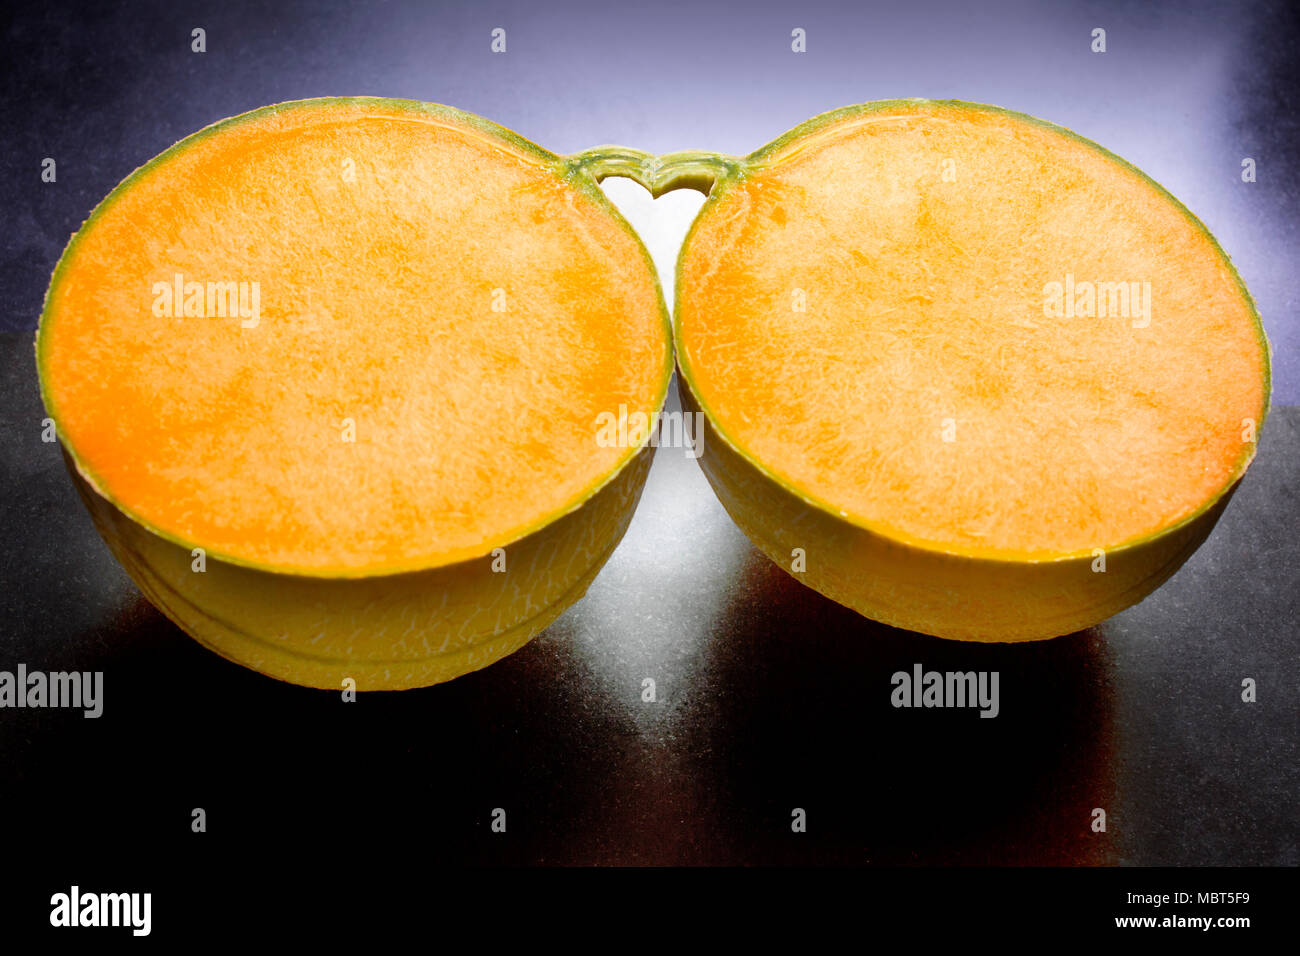 Der Raum zwischen zwei Hälften einer Melone und seinen Stiel bildet eine Herzform. Stockfoto